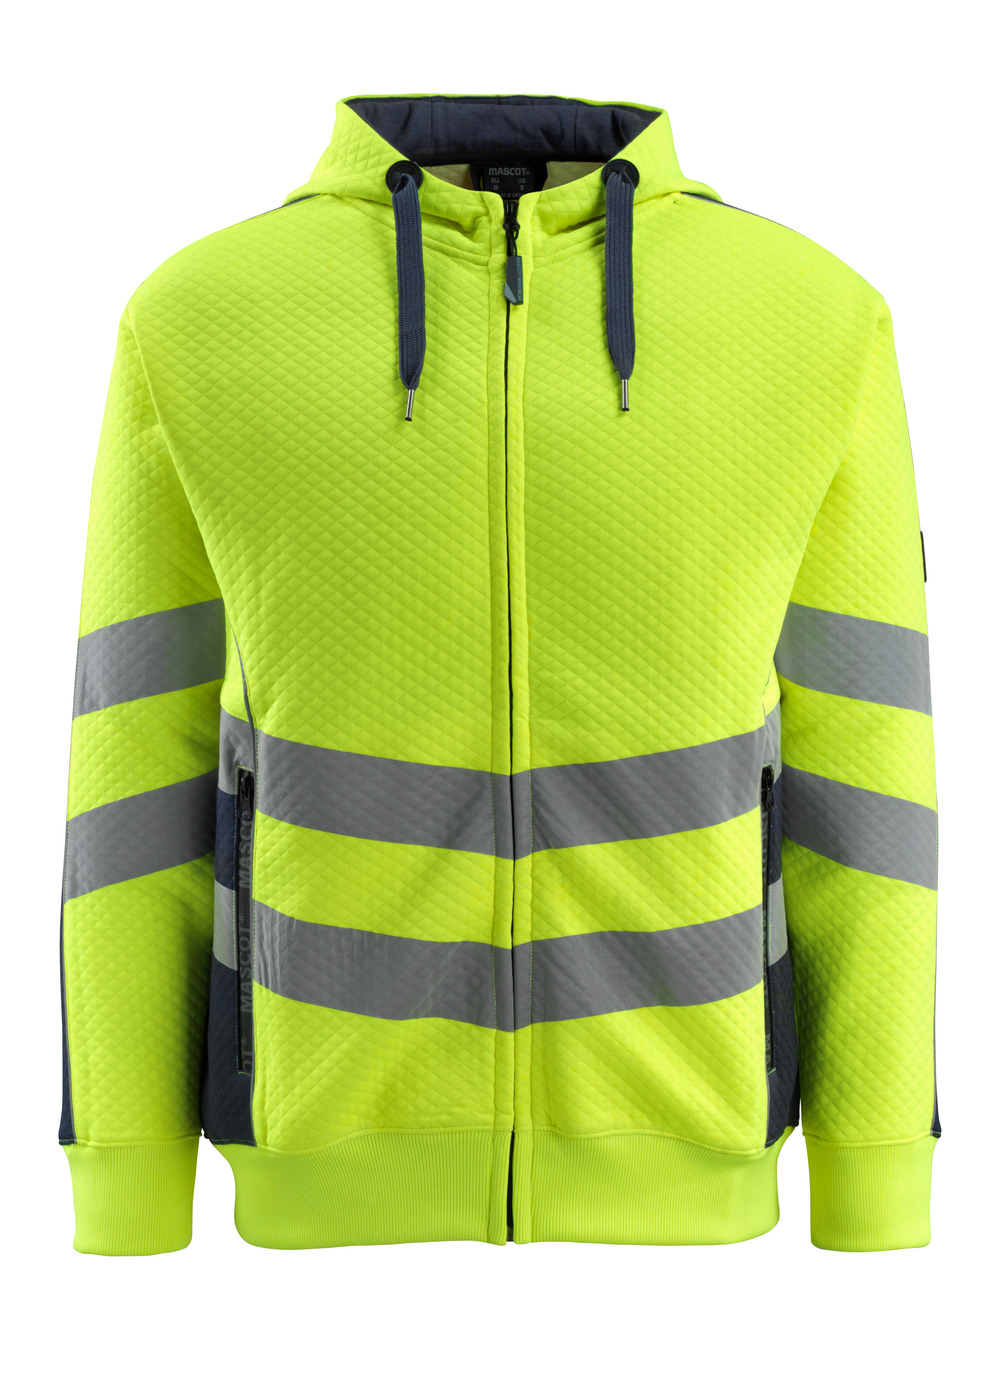 MASCOT-Warnschutz, Warn-Sweatshirt, Corby,  310 g/m², gelb/schwarzblau

